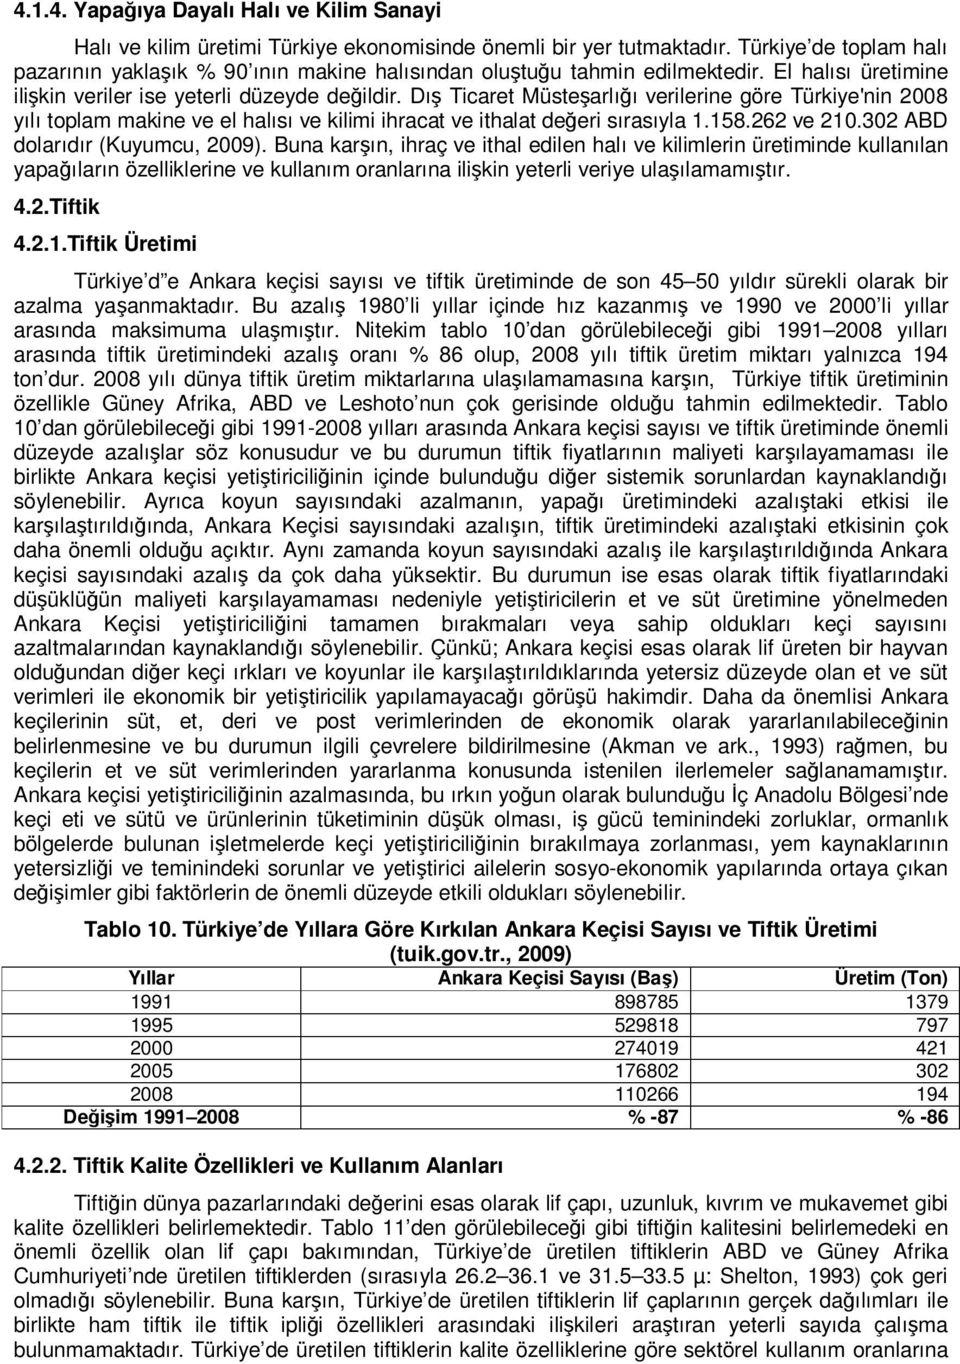 Dış Ticaret Müsteşarlığı verilerine göre Türkiye'nin 2008 yılı toplam makine ve el halısı ve kilimi ihracat ve ithalat değeri sırasıyla 1.158.262 ve 210.302 ABD dolarıdır (Kuyumcu, 2009).